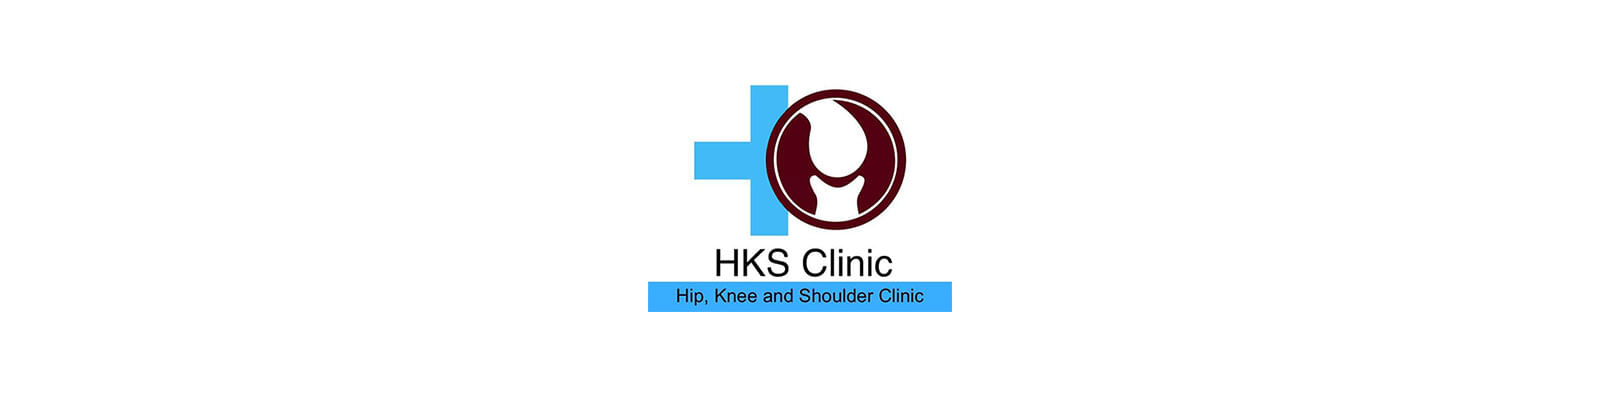 HKS Clinic